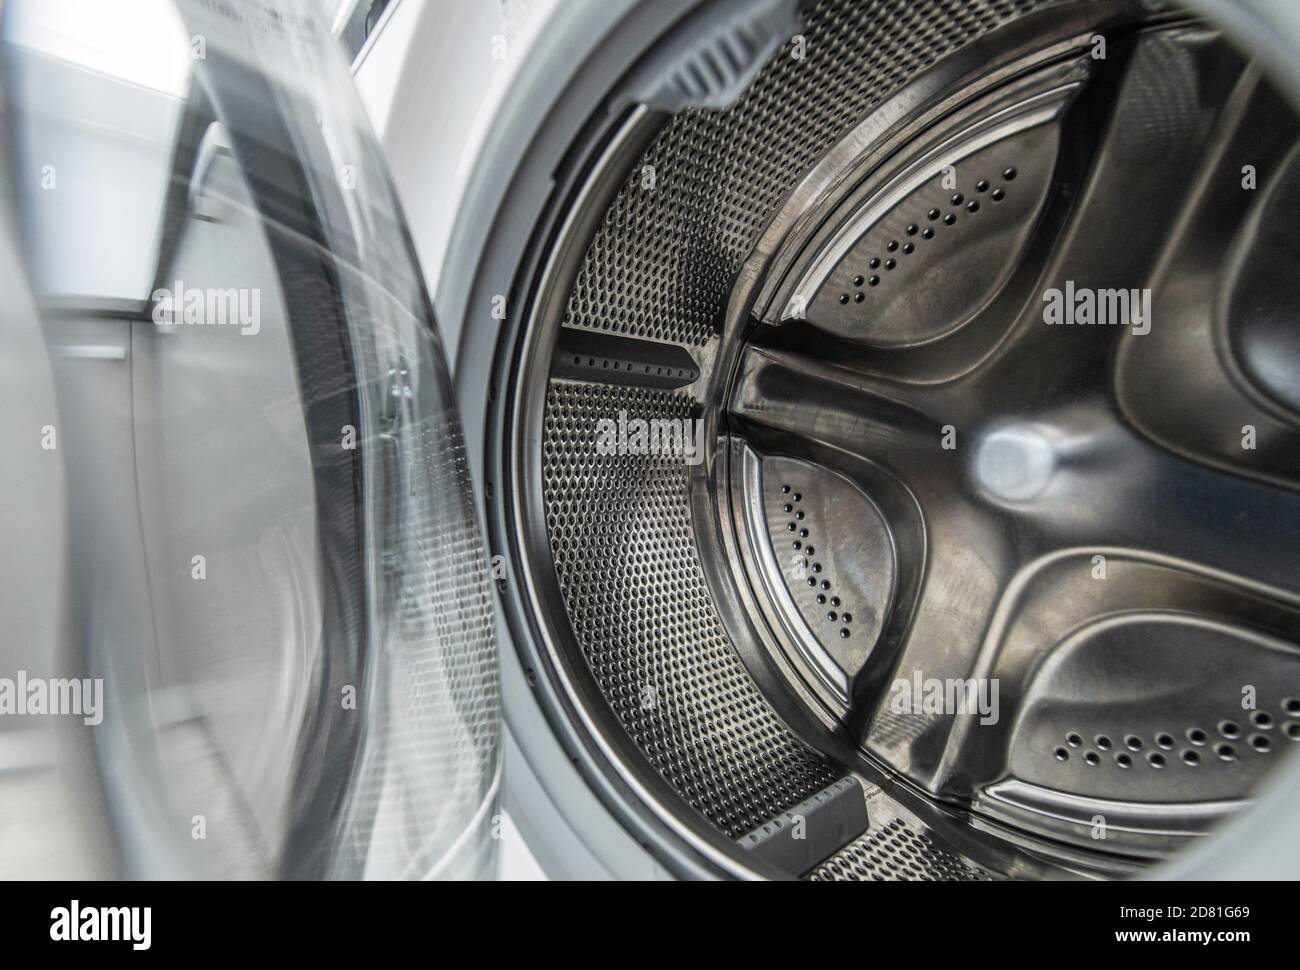 Hausgerät zum Waschen von Wäsche. Reinigen Sie Das Innere Der Waschmaschinentrommel Stockfoto